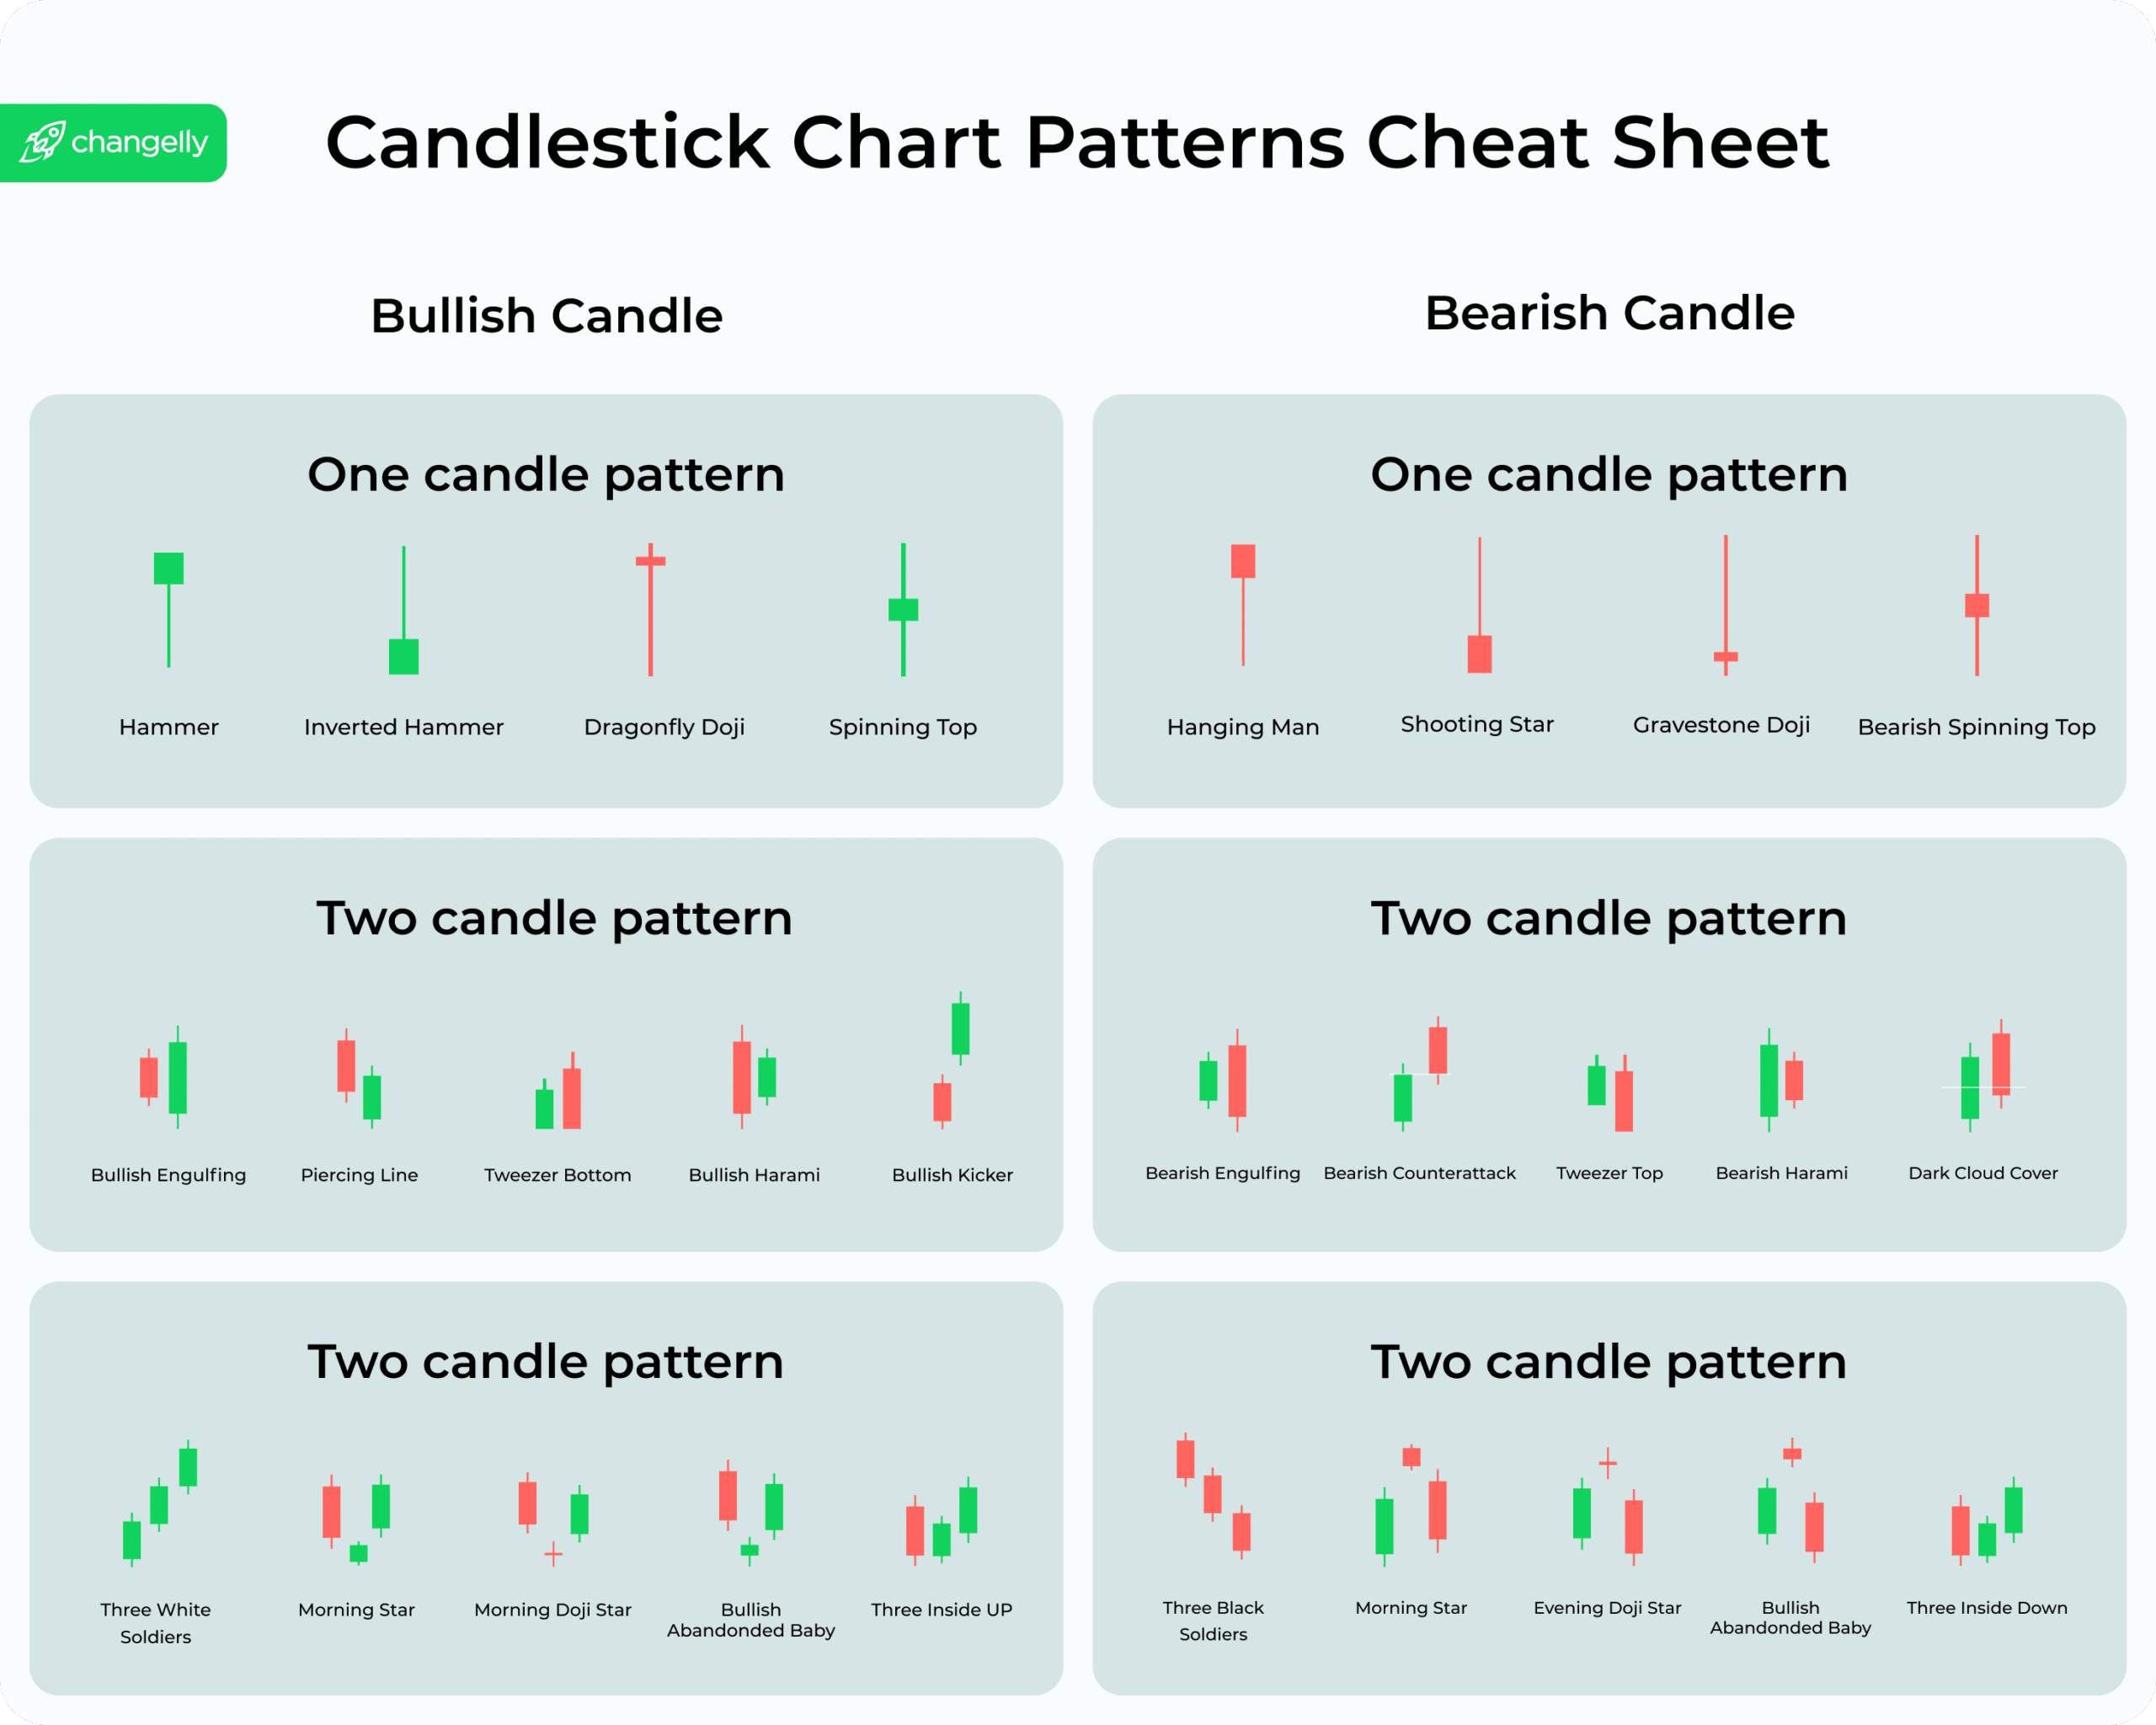 Candlestick chart patterns cheat sheet